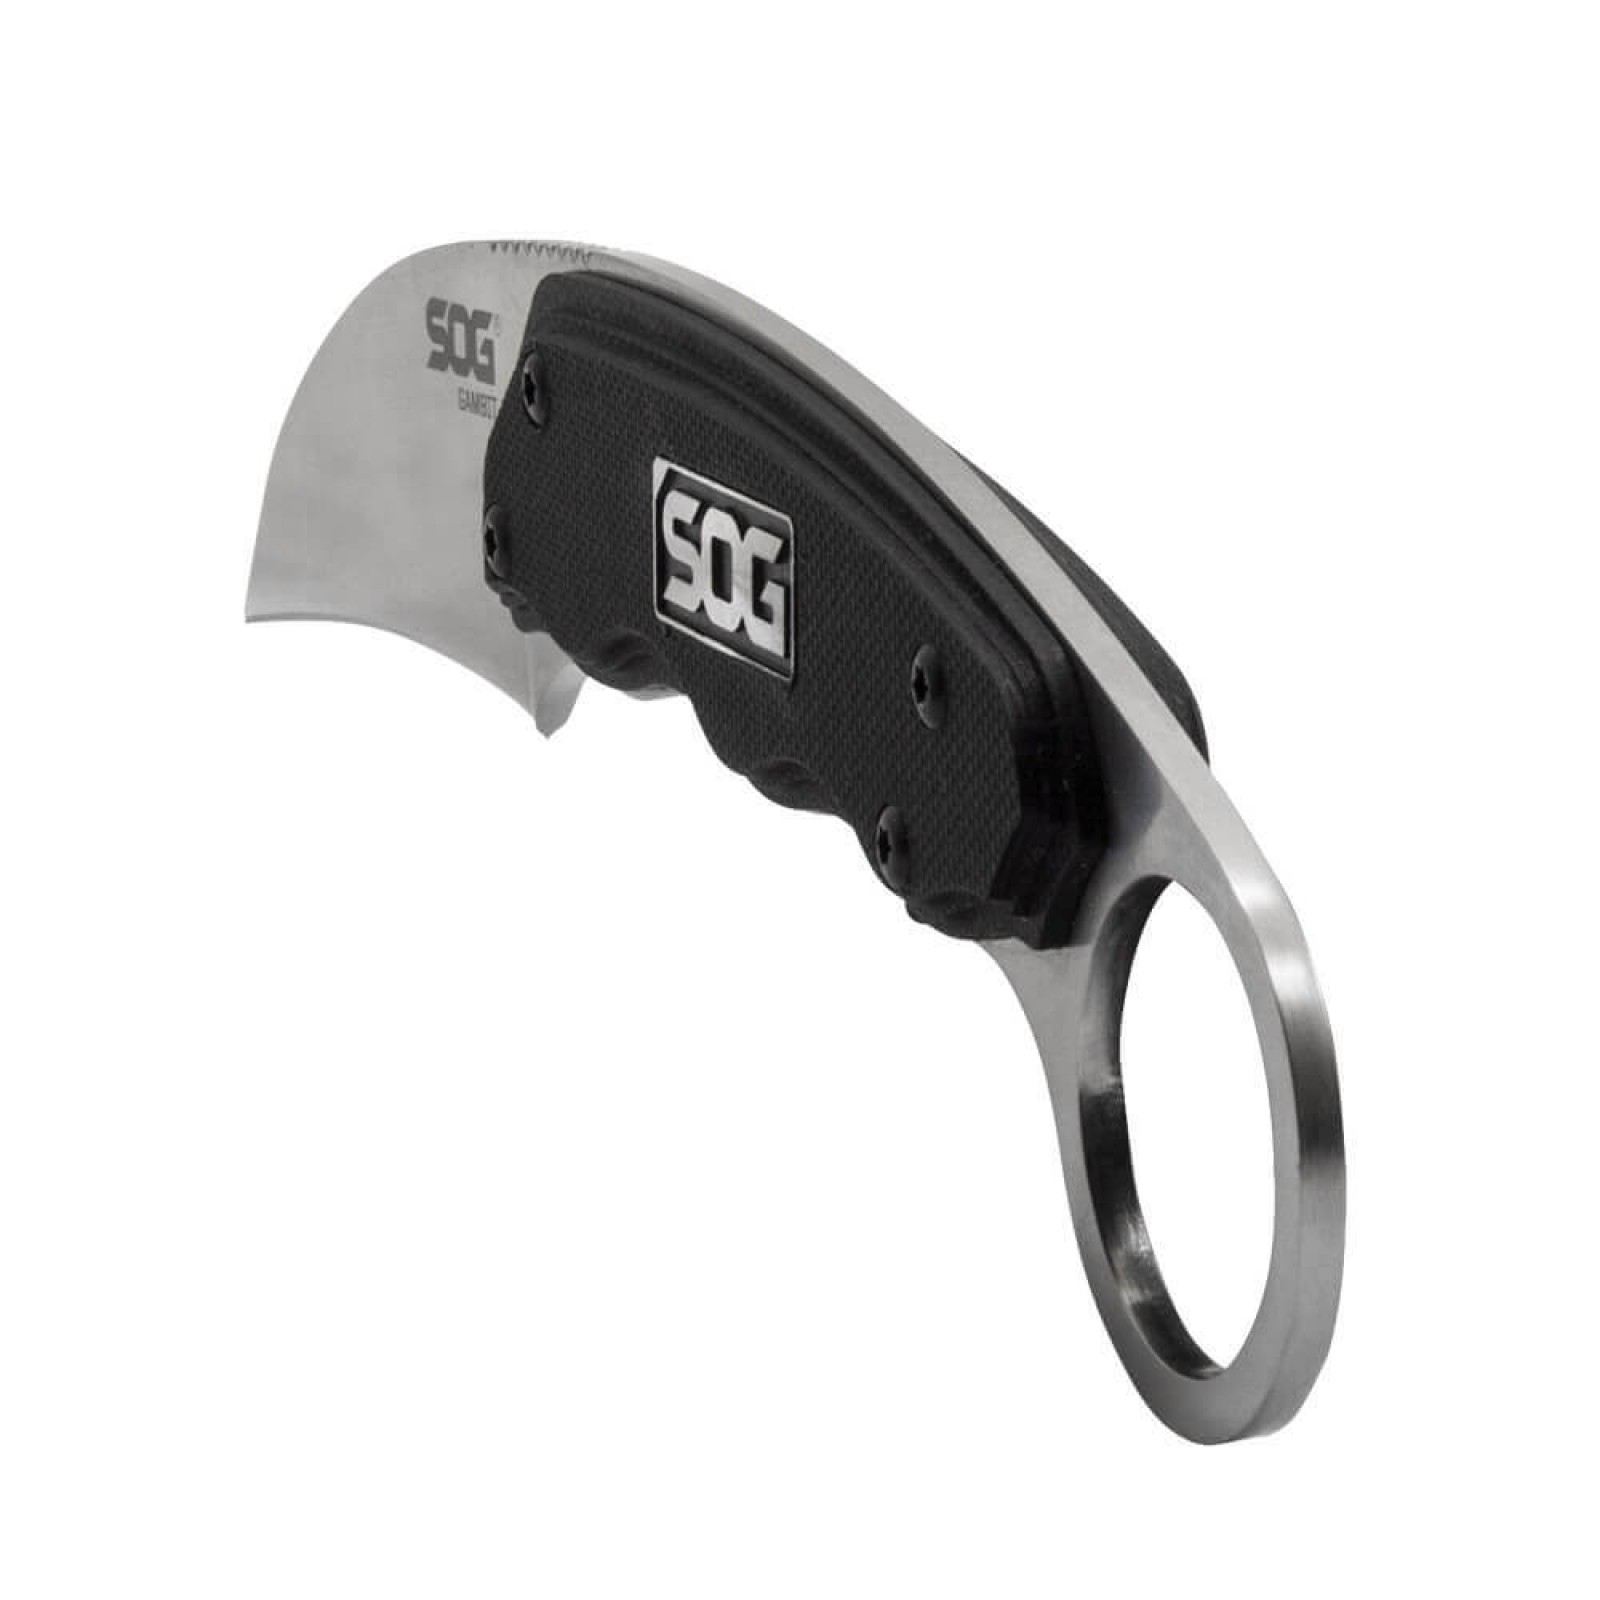 фото Нож с фиксированным клинком gambit 6.6 см - sog gb1001, сталь 7cr17mov, рукоять пластик grn